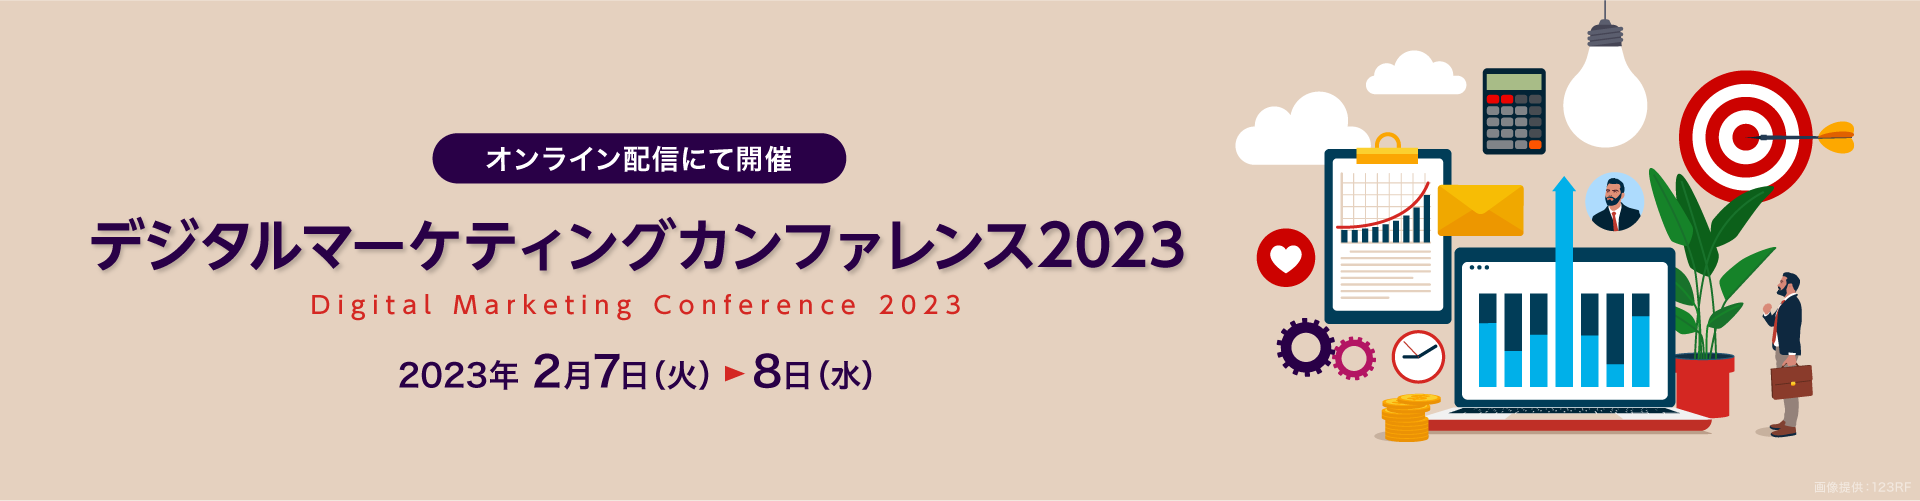 デジタルマーケティングカンファレンス2023